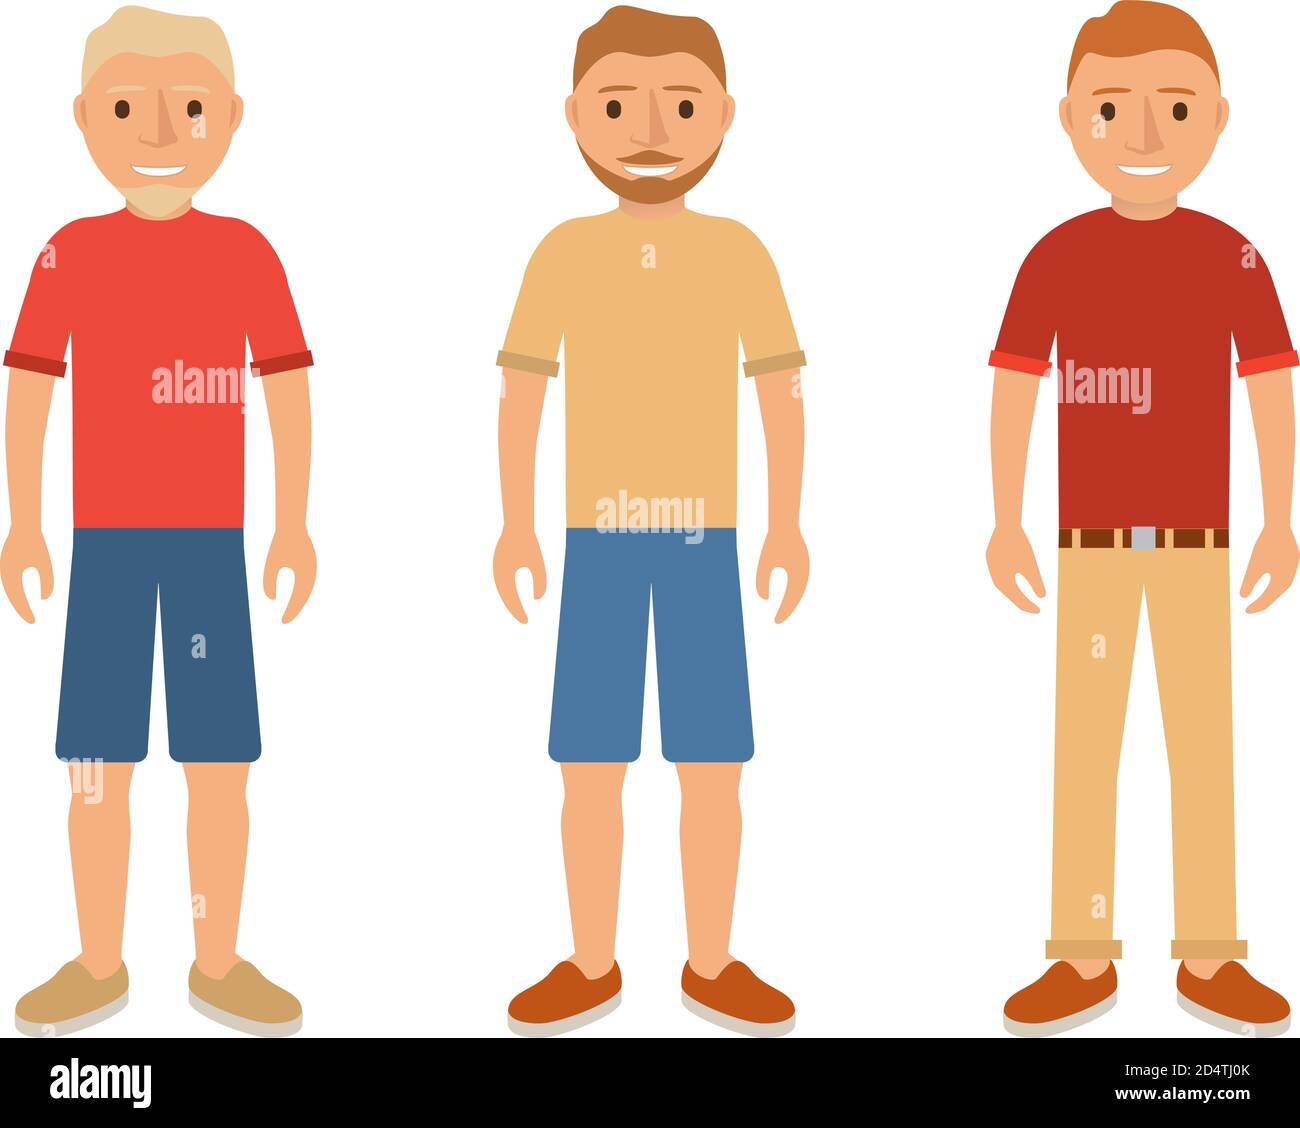 Guy ein Bart und Schnurrbärte blond und brünett.Charakter Cartoon Avatar sozialen Netzwerken und mobilen Anwendungen flachen Vektor. Stock Vektor